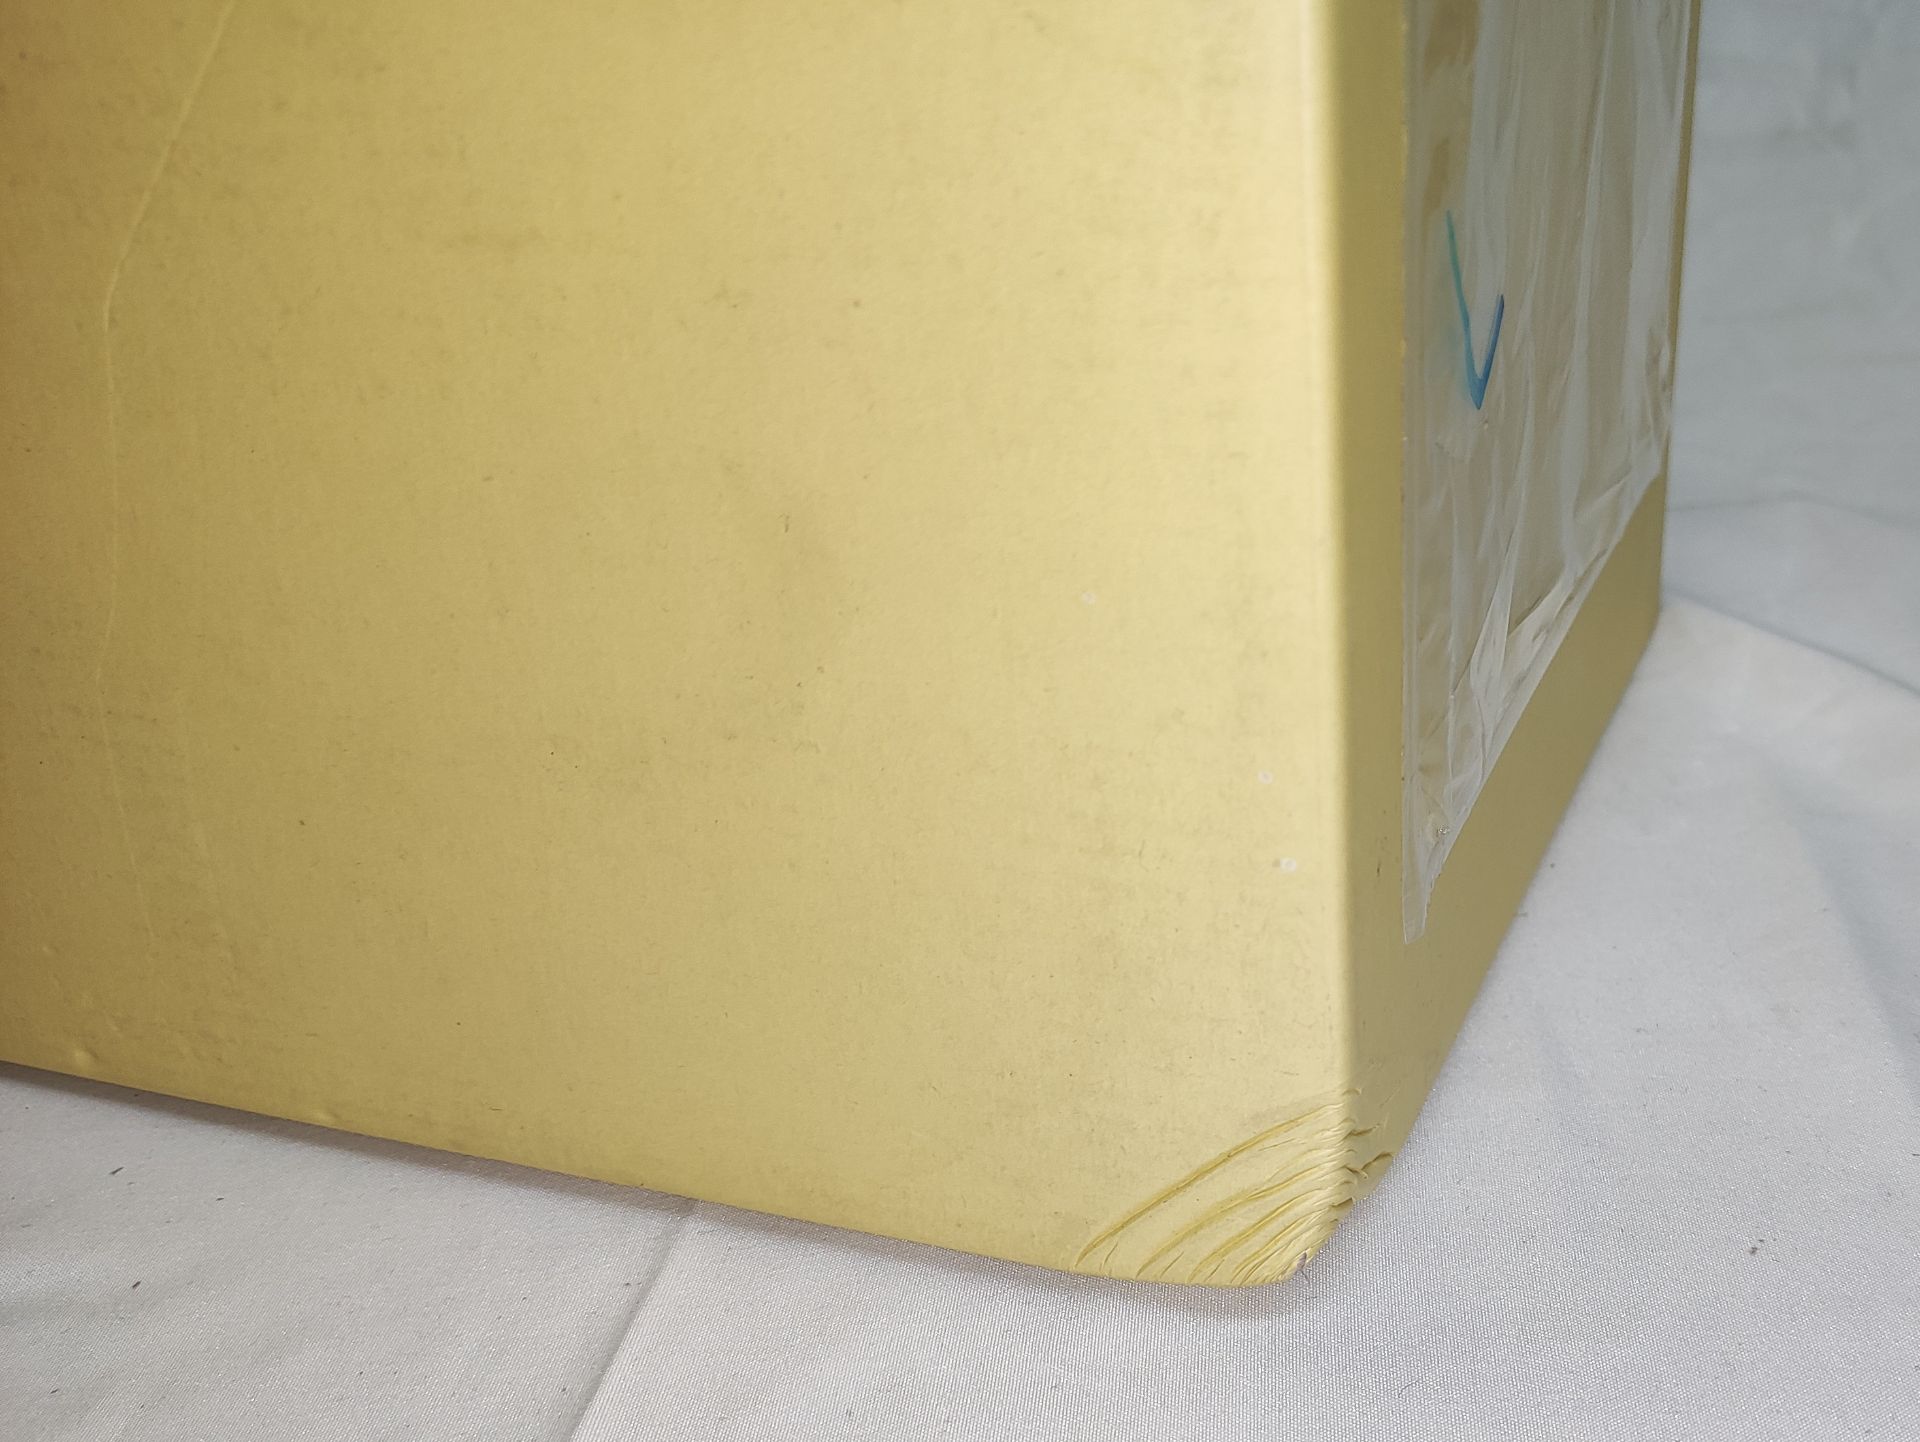 1 x VILLARI Hiroito Square Tissue Box - Chrome Plated - Boxed - Original RRP £529 - Ref: 6125321/ - Image 16 of 17